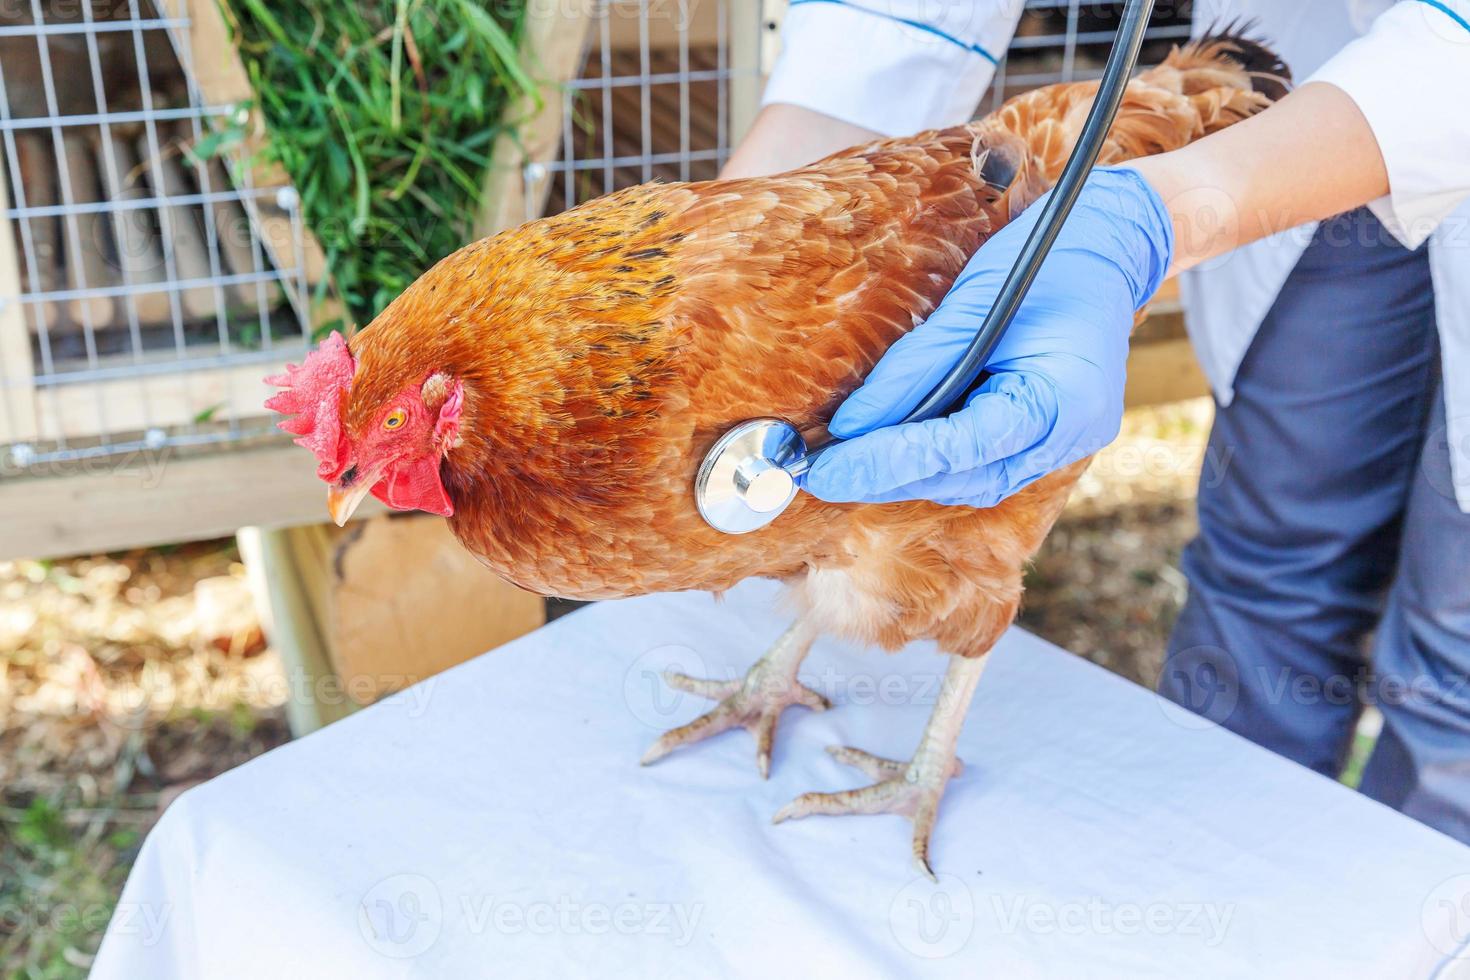 dierenarts met stethoscoop houden en onderzoeken van kip op ranch achtergrond. kip in handen van dierenarts voor controle in natuurlijke eco-boerderij. dierenverzorging en ecologisch landbouwconcept. foto